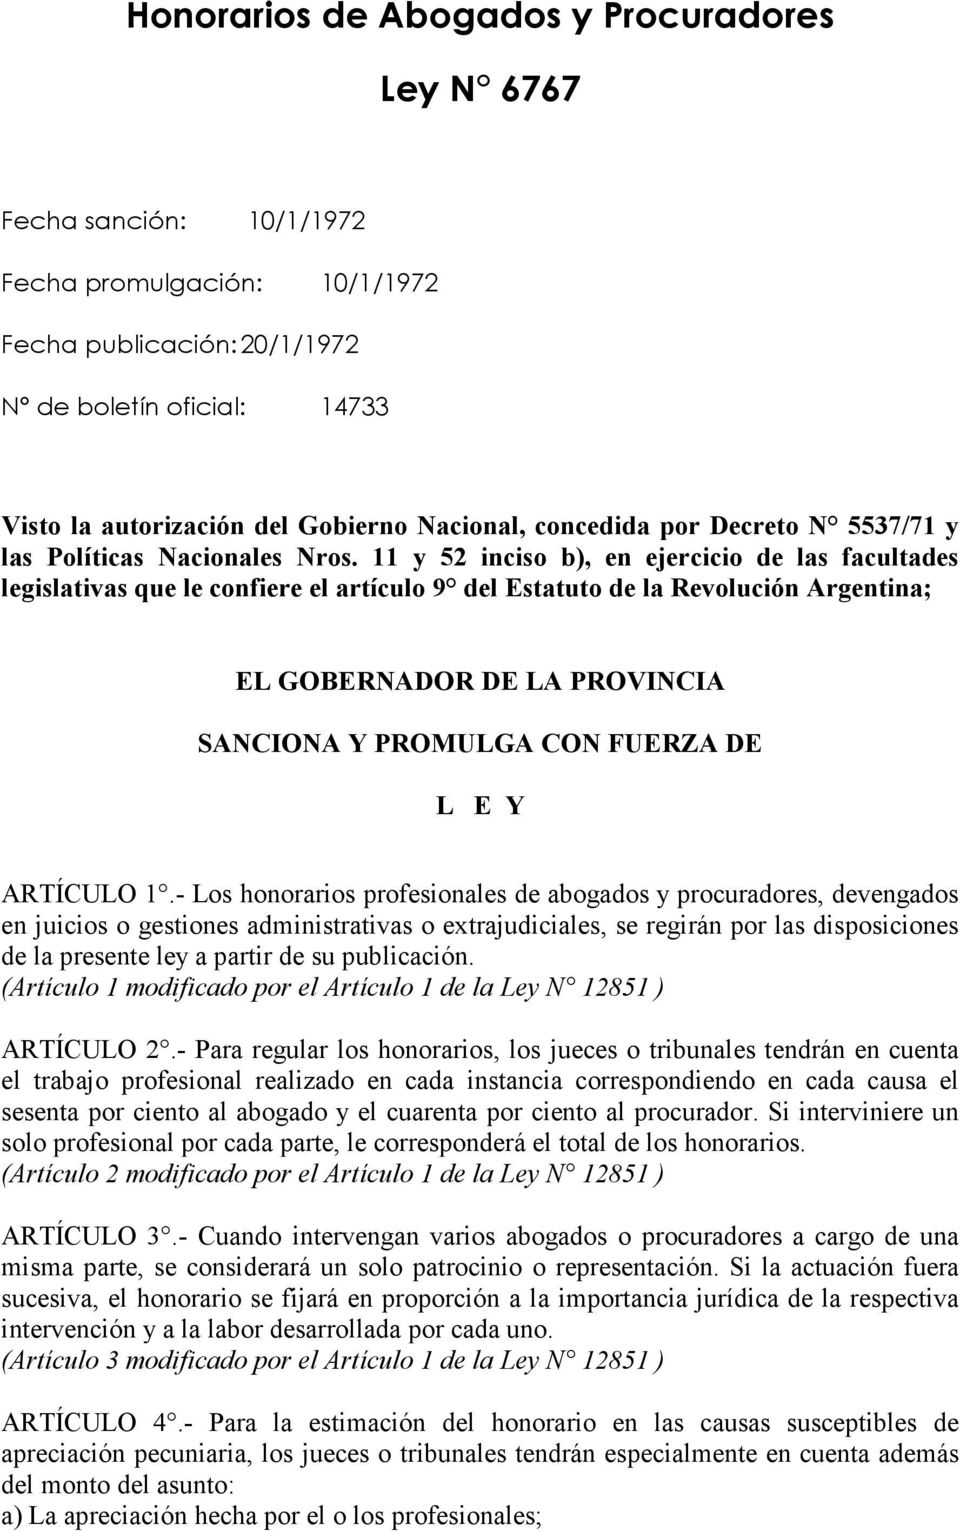 11 y 52 inciso b), en ejercicio de las facultades legislativas que le confiere el artículo 9 del Estatuto de la Revolución Argentina; EL GOBERNADOR DE LA PROVINCIA SANCIONA Y PROMULGA CON FUERZA DE L